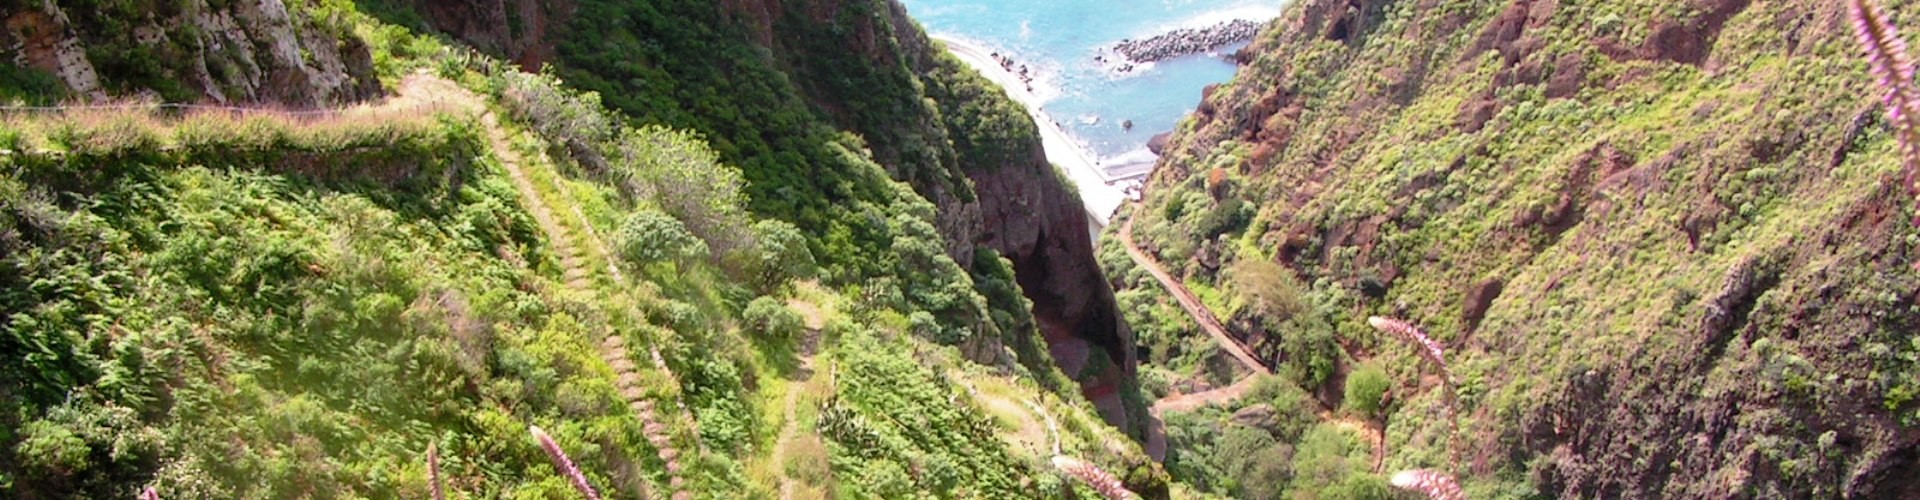 PR19 Caminho Real do Paul do Mar Hiking Trail in Madeira